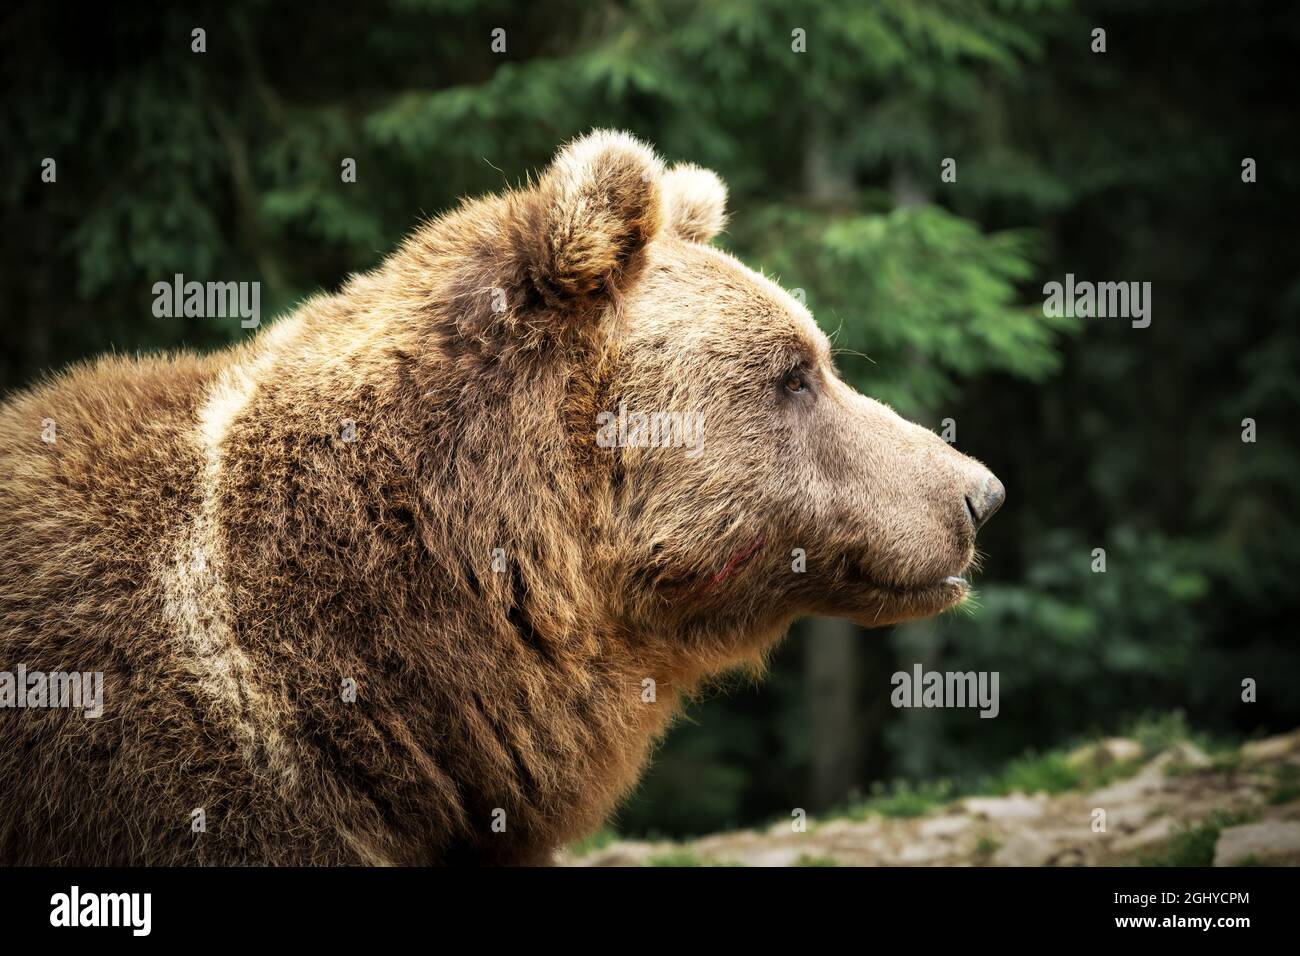 Brauner Wildbär Porträt im grünen Sommerwald. Tierfotografie Stockfoto